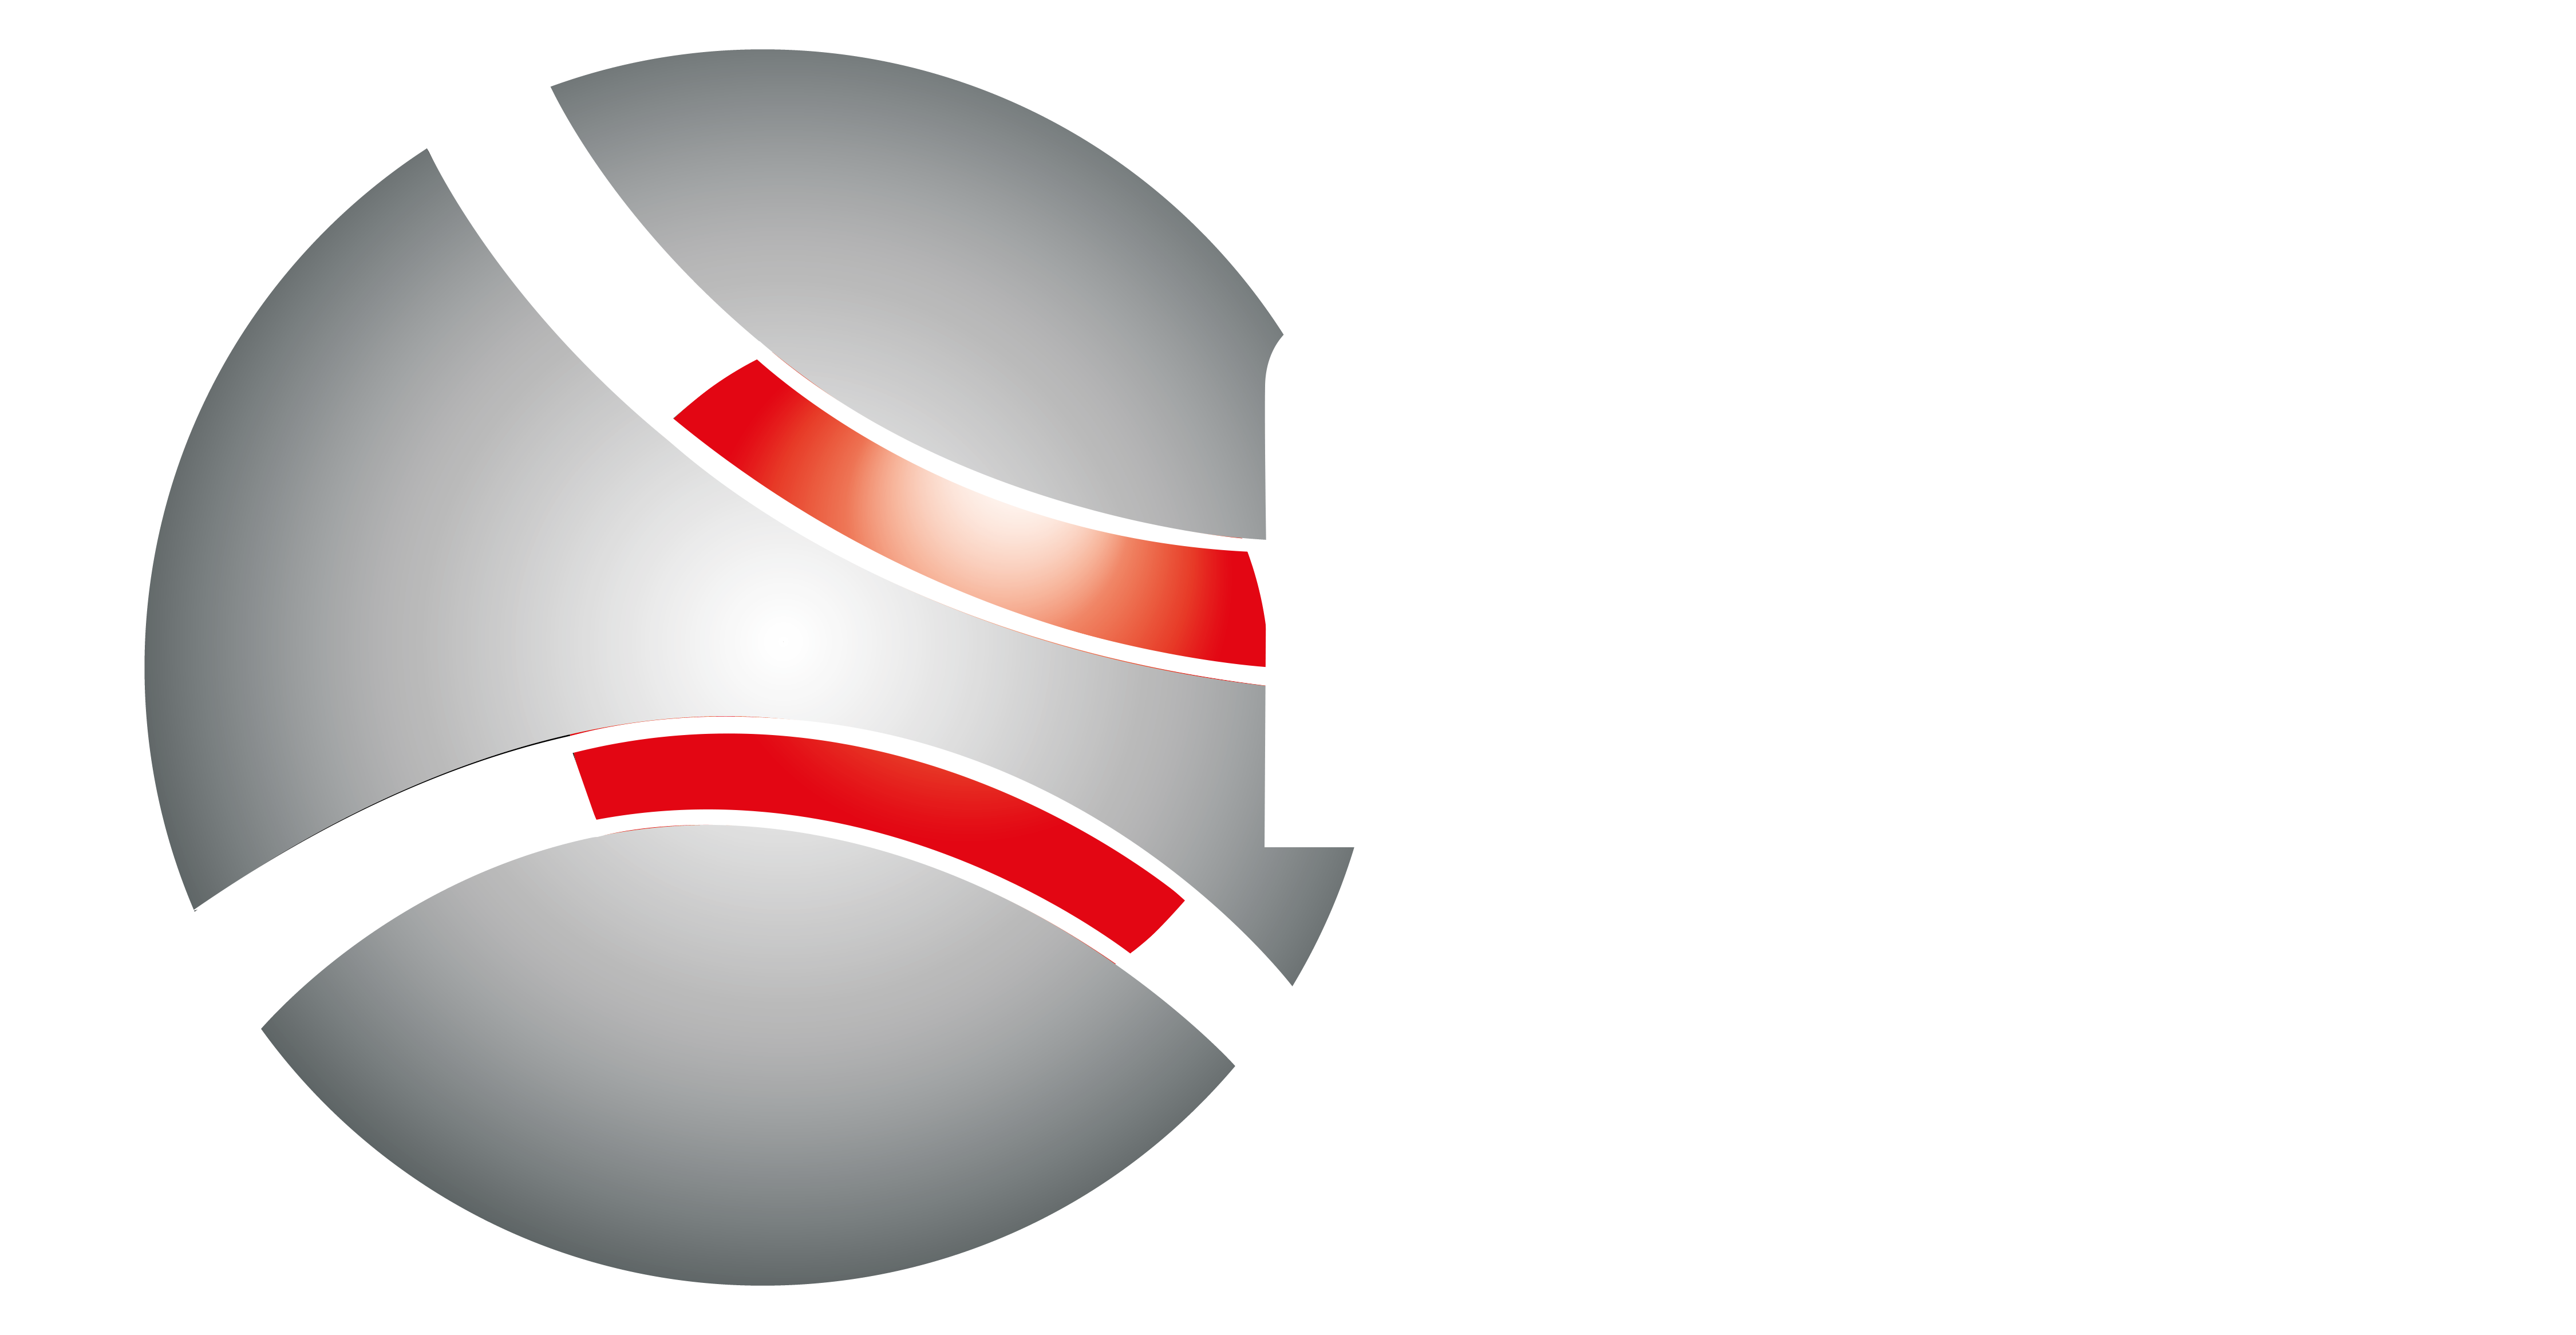 NP Softwares